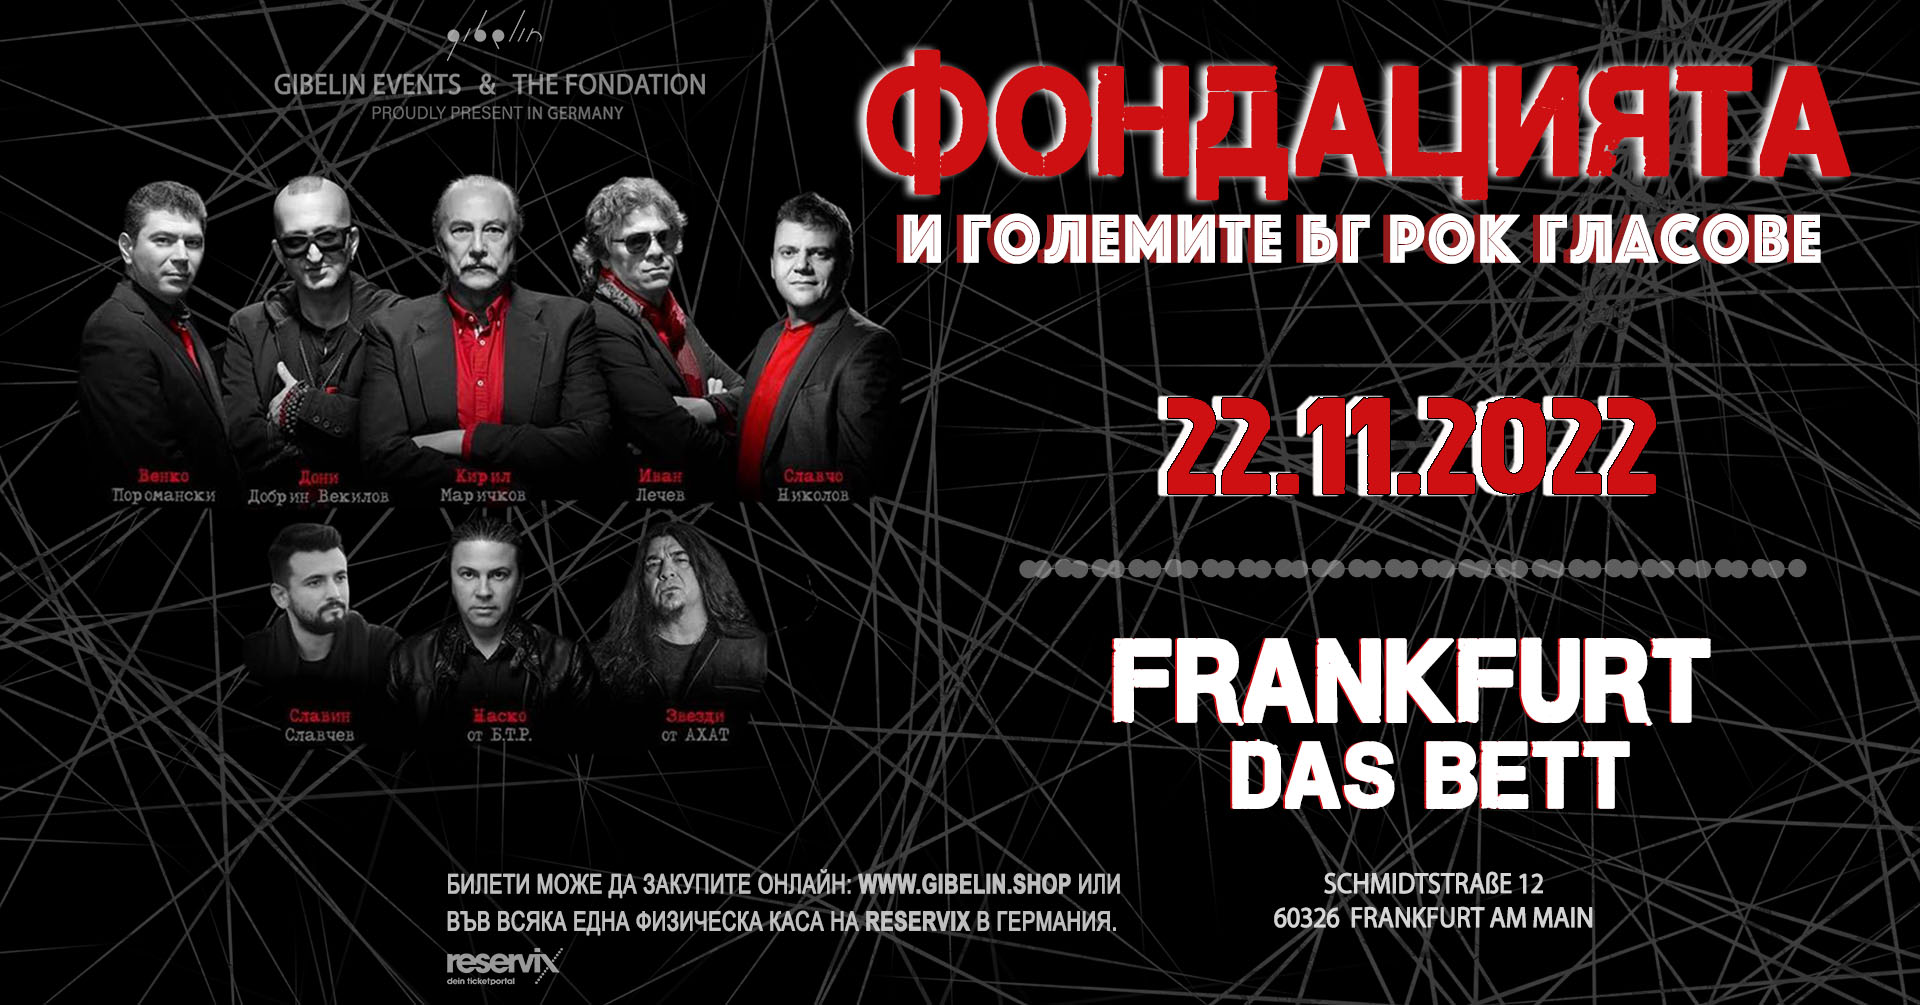 ФОНДАЦИЯТА и големите български рок гласове FRANKFURT |Тhe Fondation & the Big Bulgarian Rock Voices